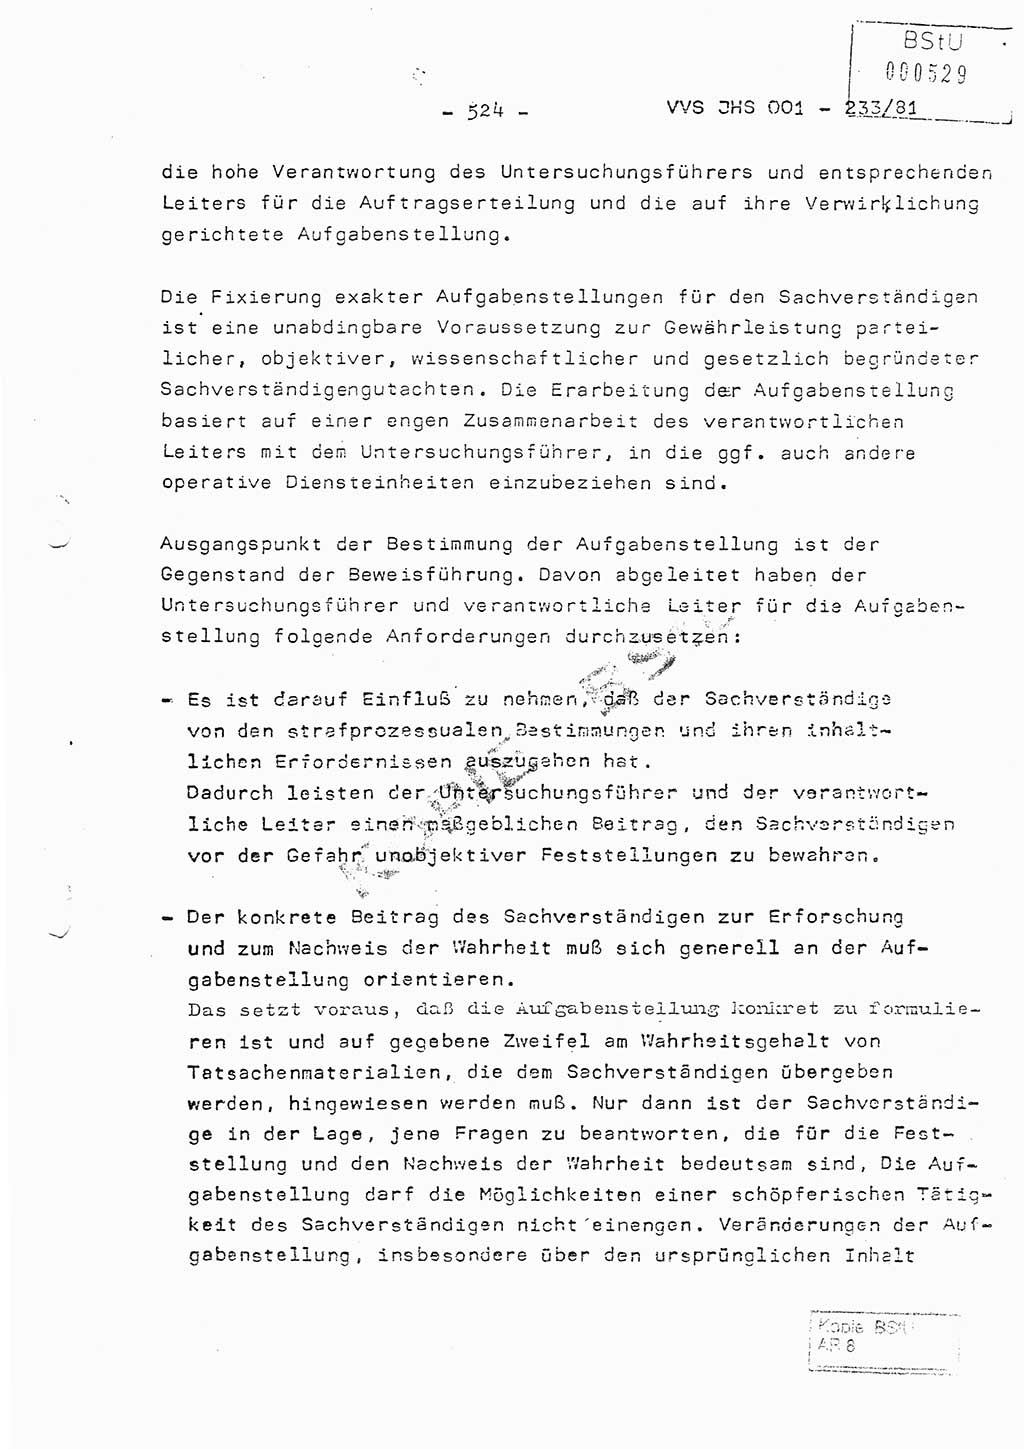 Dissertation Oberstleutnant Horst Zank (JHS), Oberstleutnant Dr. Karl-Heinz Knoblauch (JHS), Oberstleutnant Gustav-Adolf Kowalewski (HA Ⅸ), Oberstleutnant Wolfgang Plötner (HA Ⅸ), Ministerium für Staatssicherheit (MfS) [Deutsche Demokratische Republik (DDR)], Juristische Hochschule (JHS), Vertrauliche Verschlußsache (VVS) o001-233/81, Potsdam 1981, Blatt 524 (Diss. MfS DDR JHS VVS o001-233/81 1981, Bl. 524)